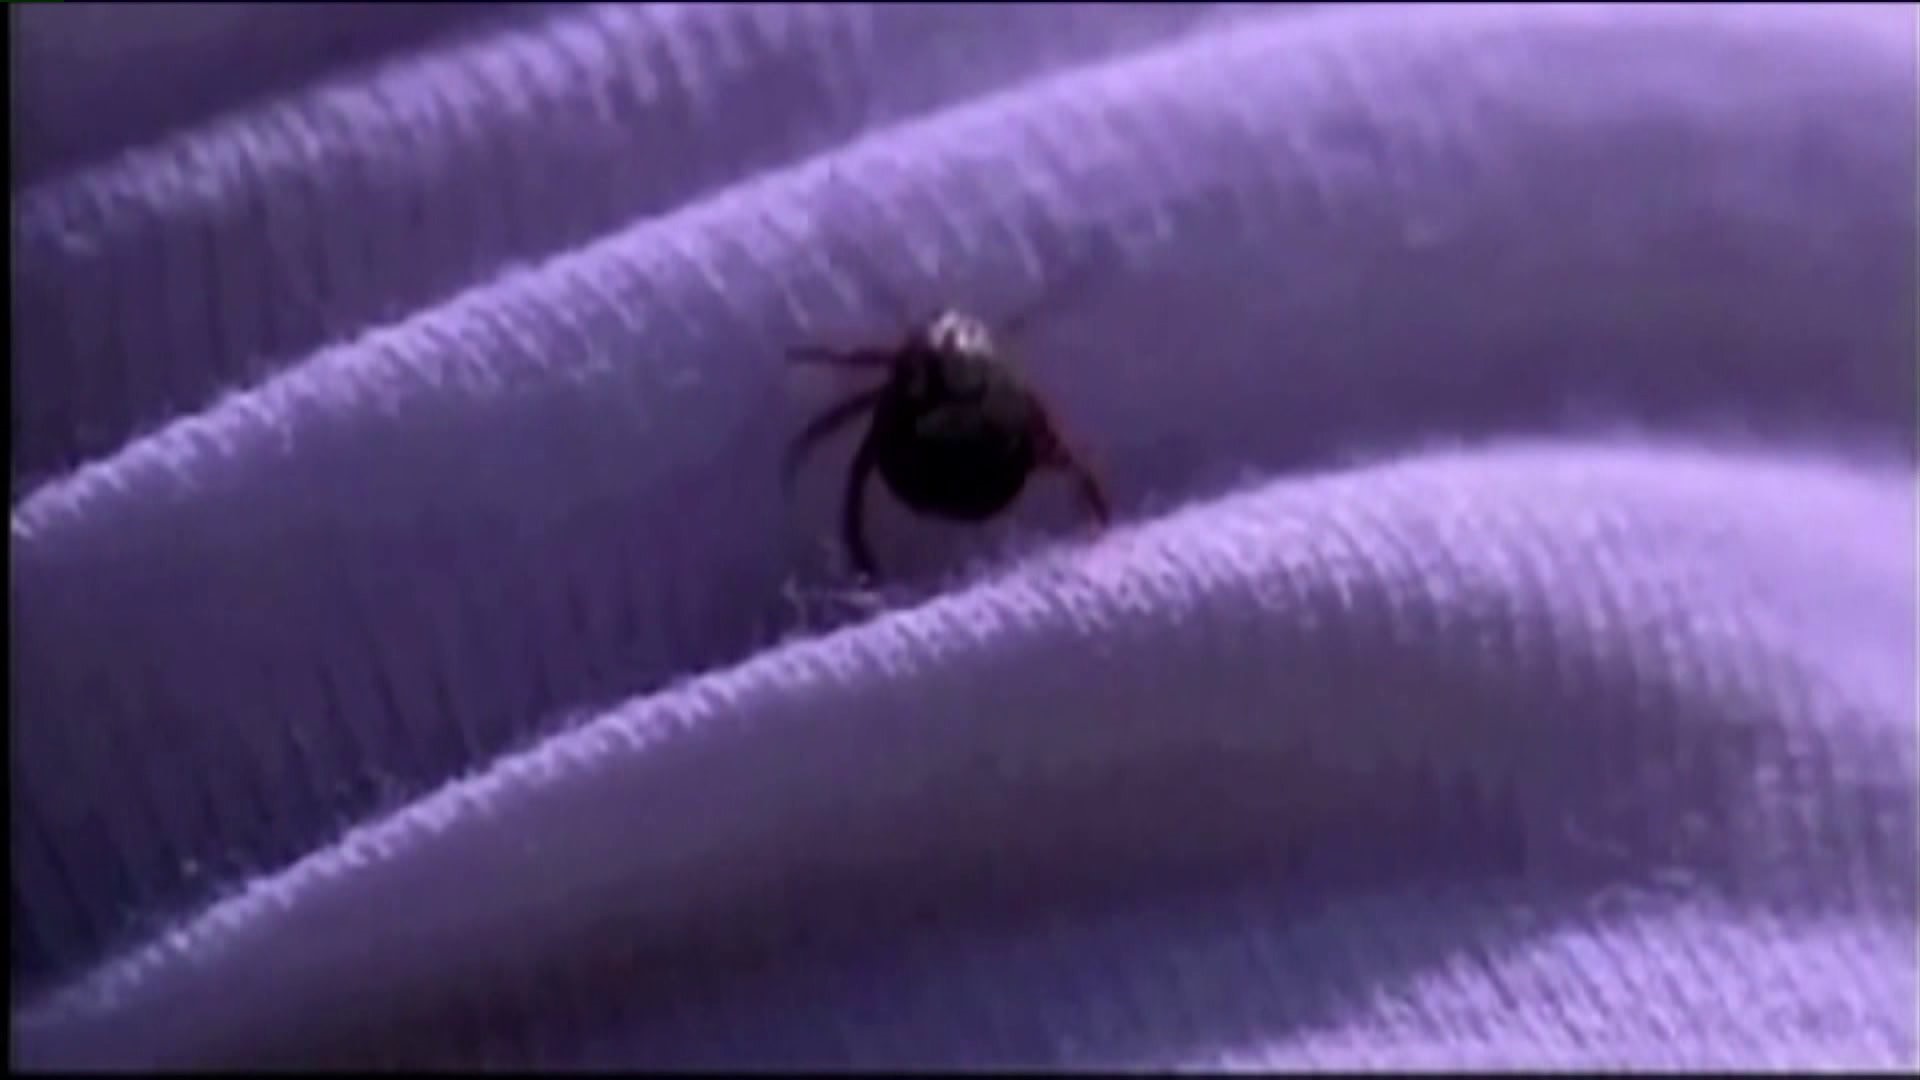 The dangers of ticks